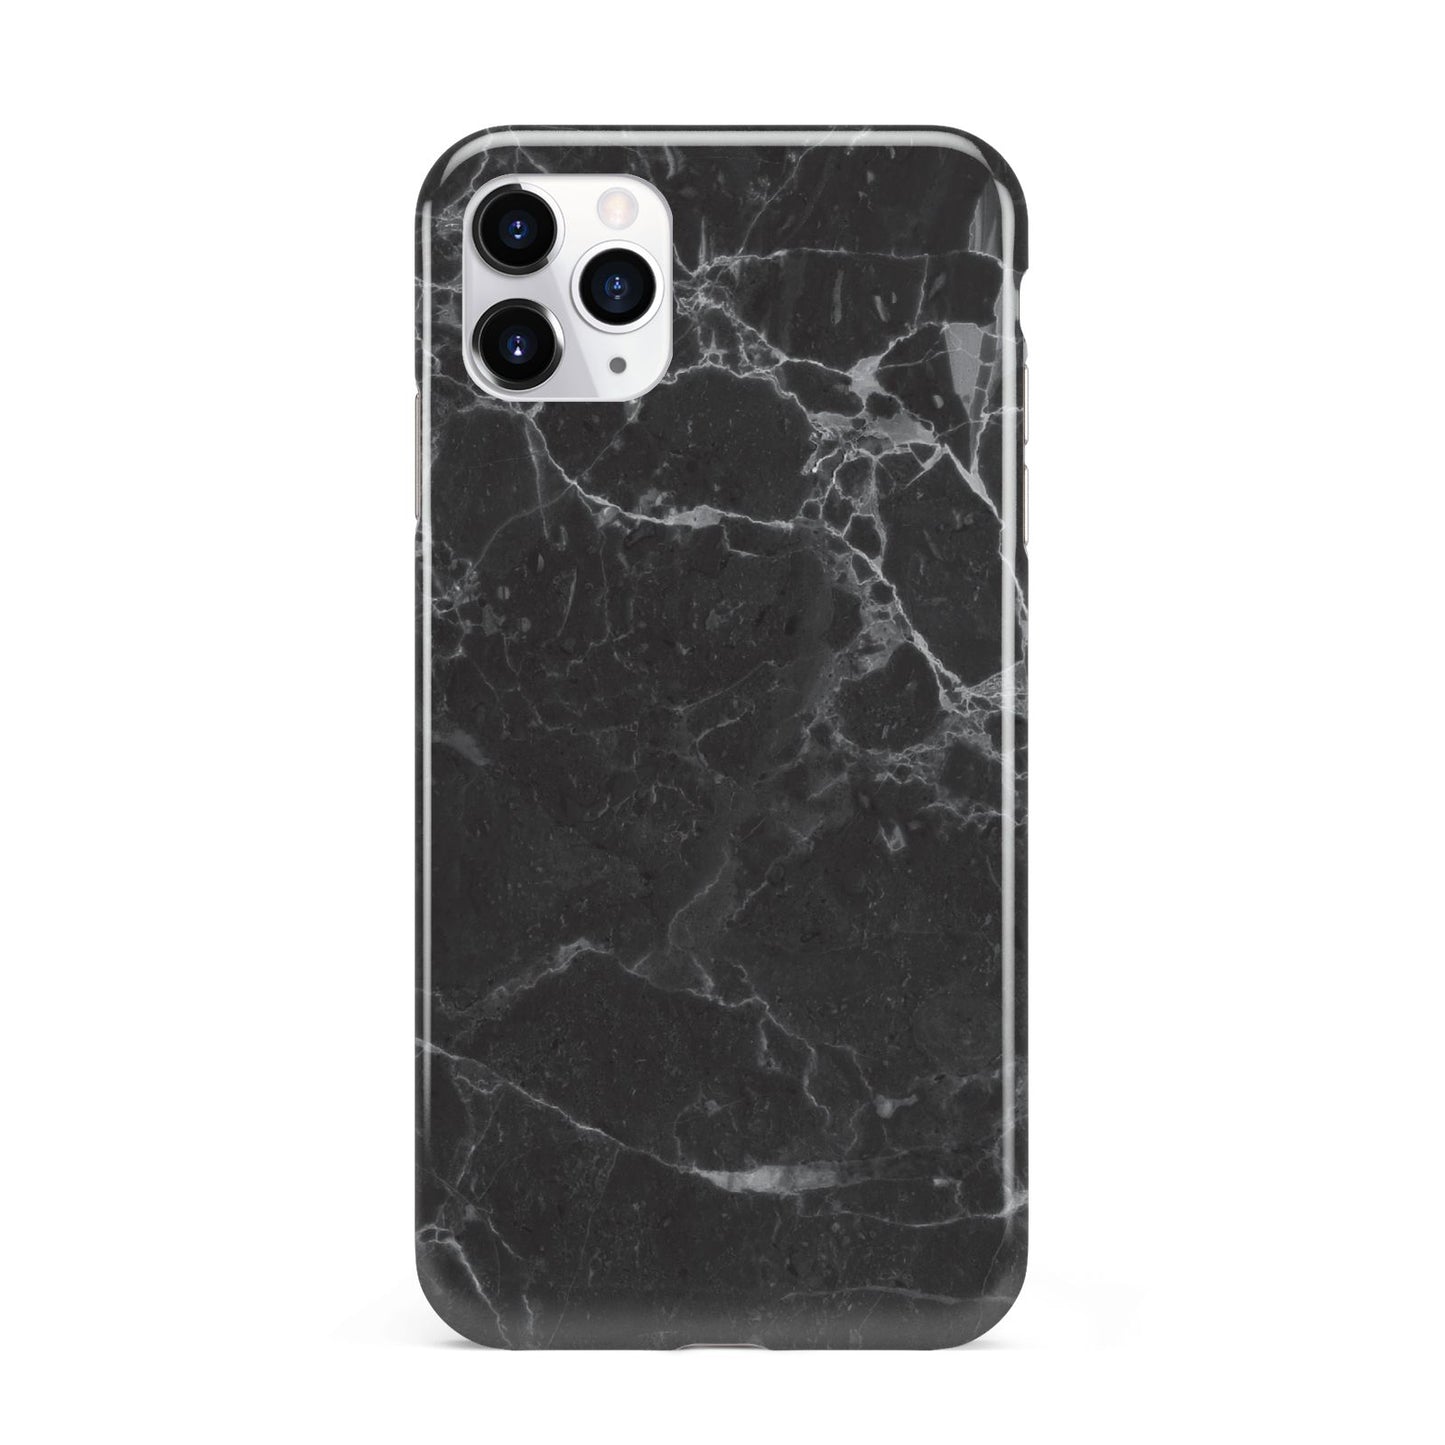 Faux Marble Effect Black iPhone 11 Pro Max 3D Tough Case